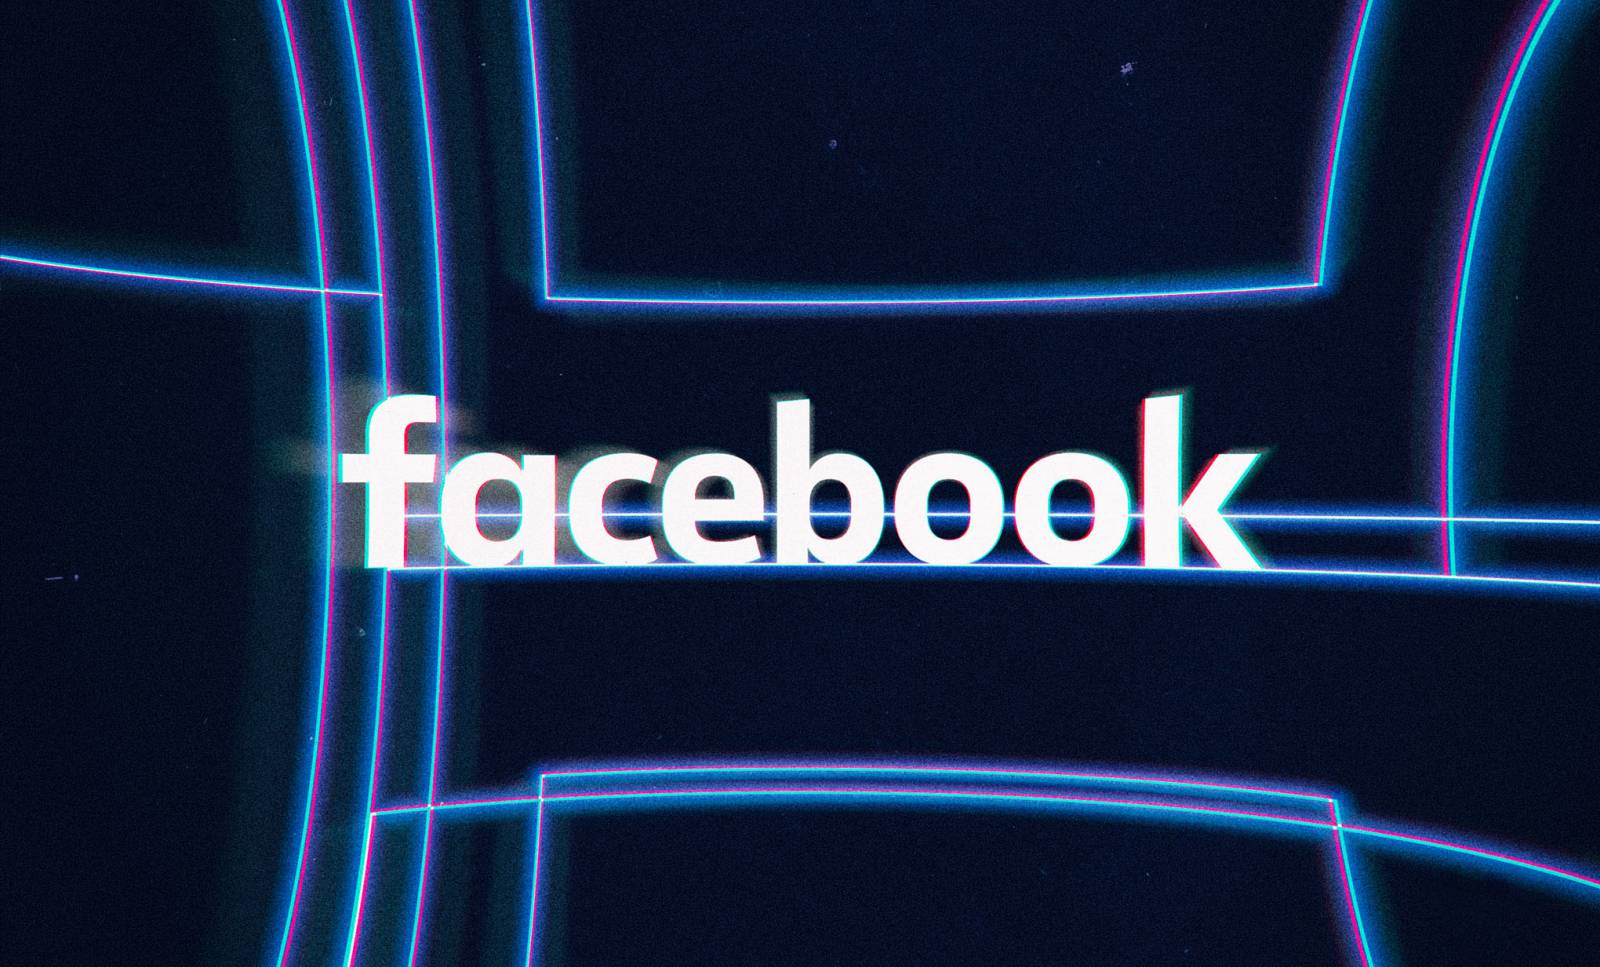 Facebook. Pubblicati 419 MILIONI di numeri di telefono di persone